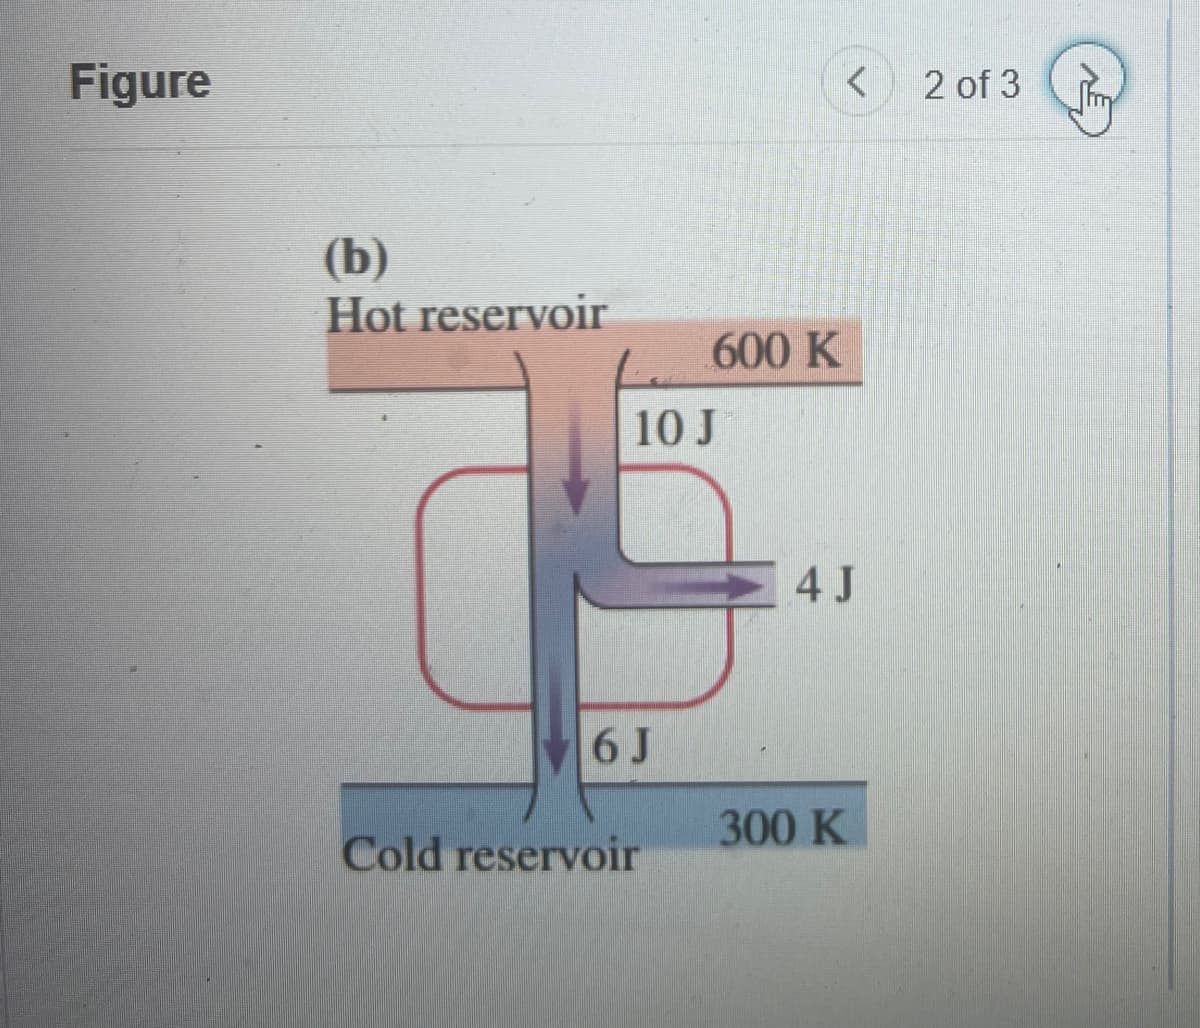 Figure
(b)
Hot reservoir
10 J
600 K
4 J
6 J
300 K
Cold reservoir
<
2 of 3